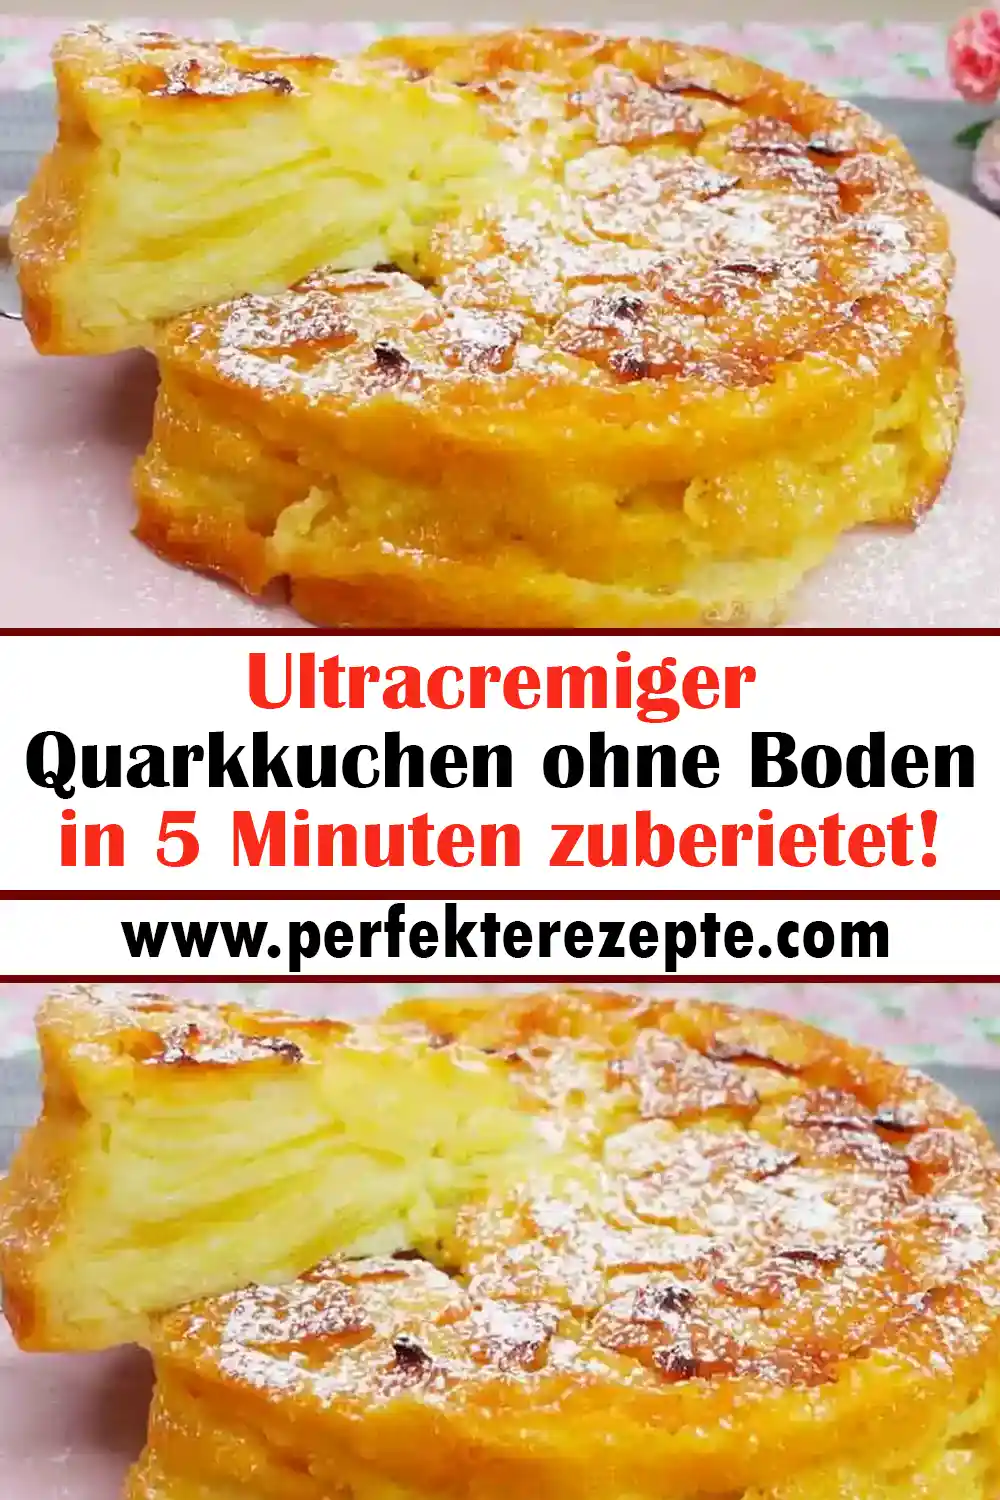 Ultracremiger Quarkkuchen ohne Boden Rezept in 5 Minuten zuberietet!